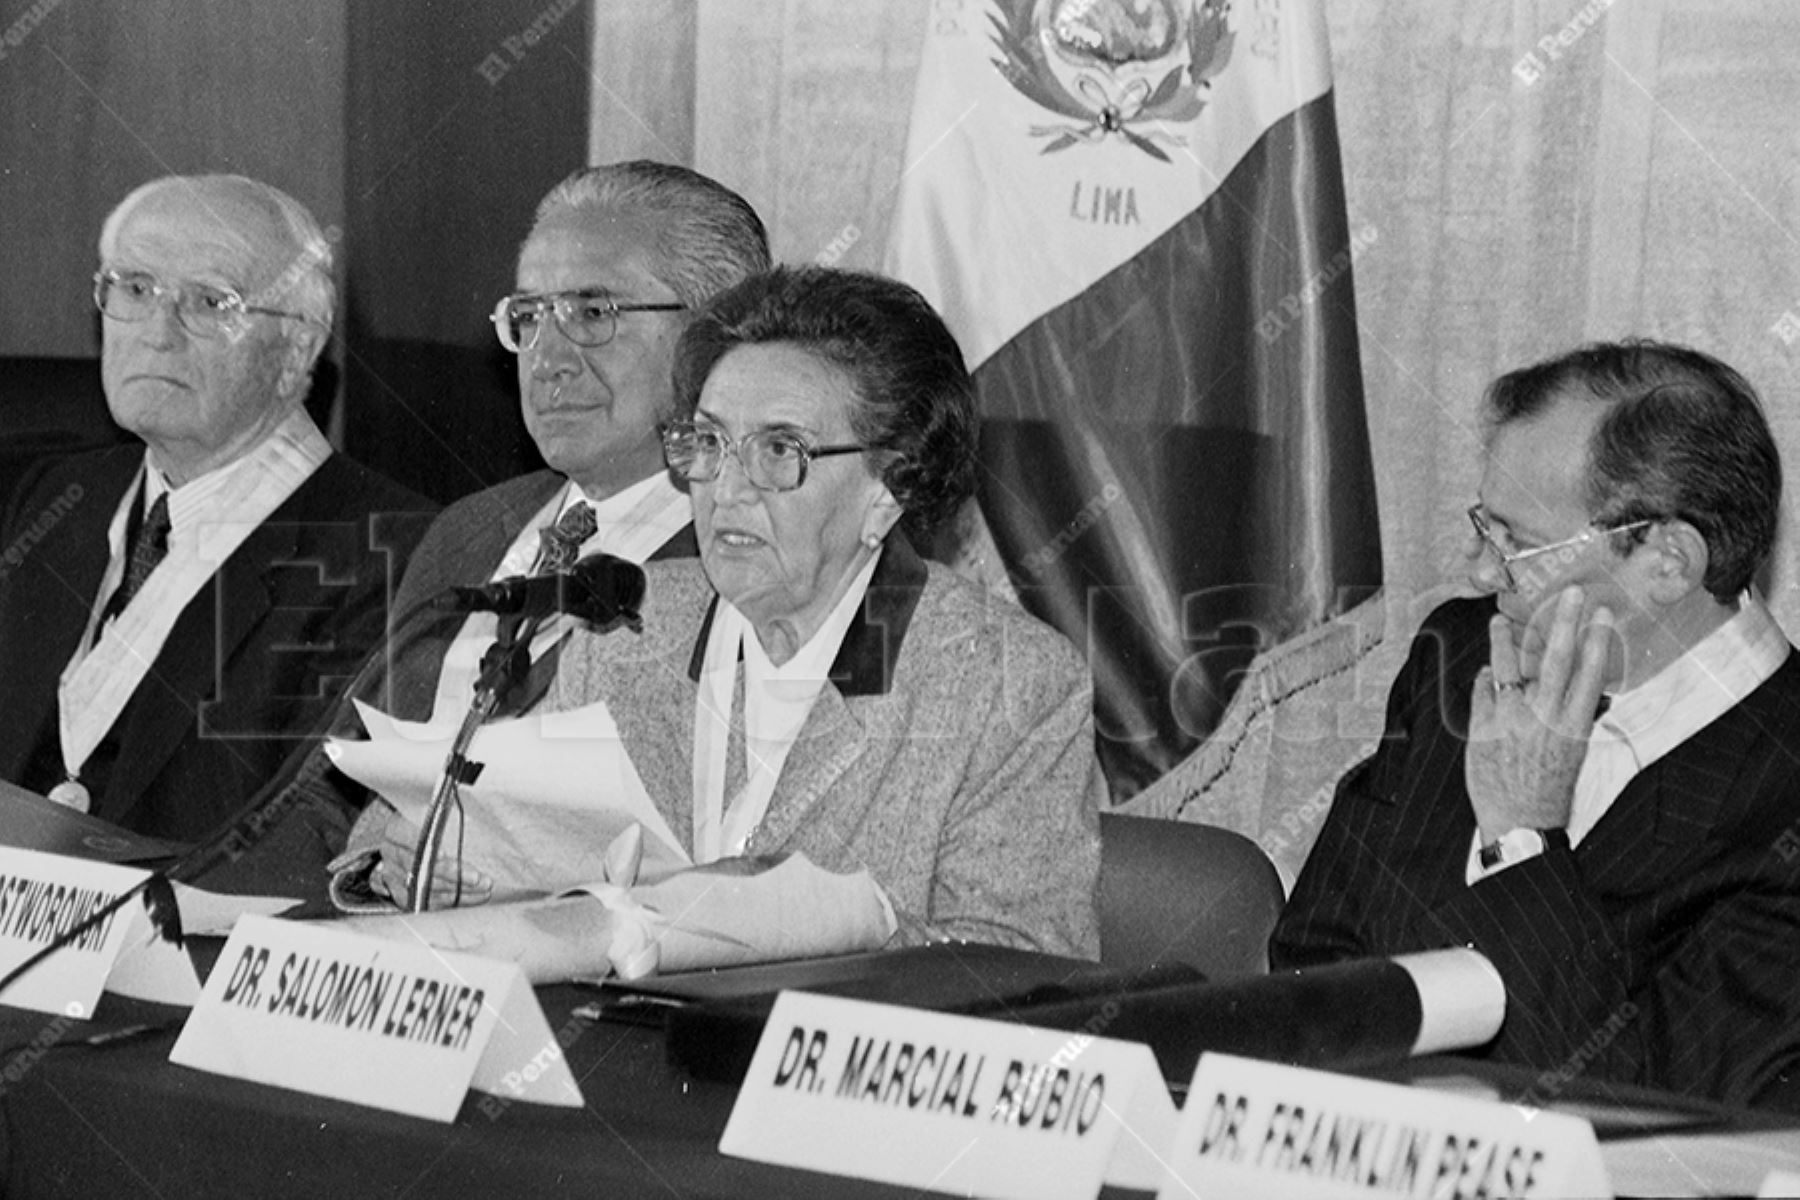 Lima - 10 junio 1996 / La historiadora María Rostworowski fue distinguida con el título de doctor honoris causa por la Pontificia Universidad Católica del Perú. Foto: Archivo El Peruano